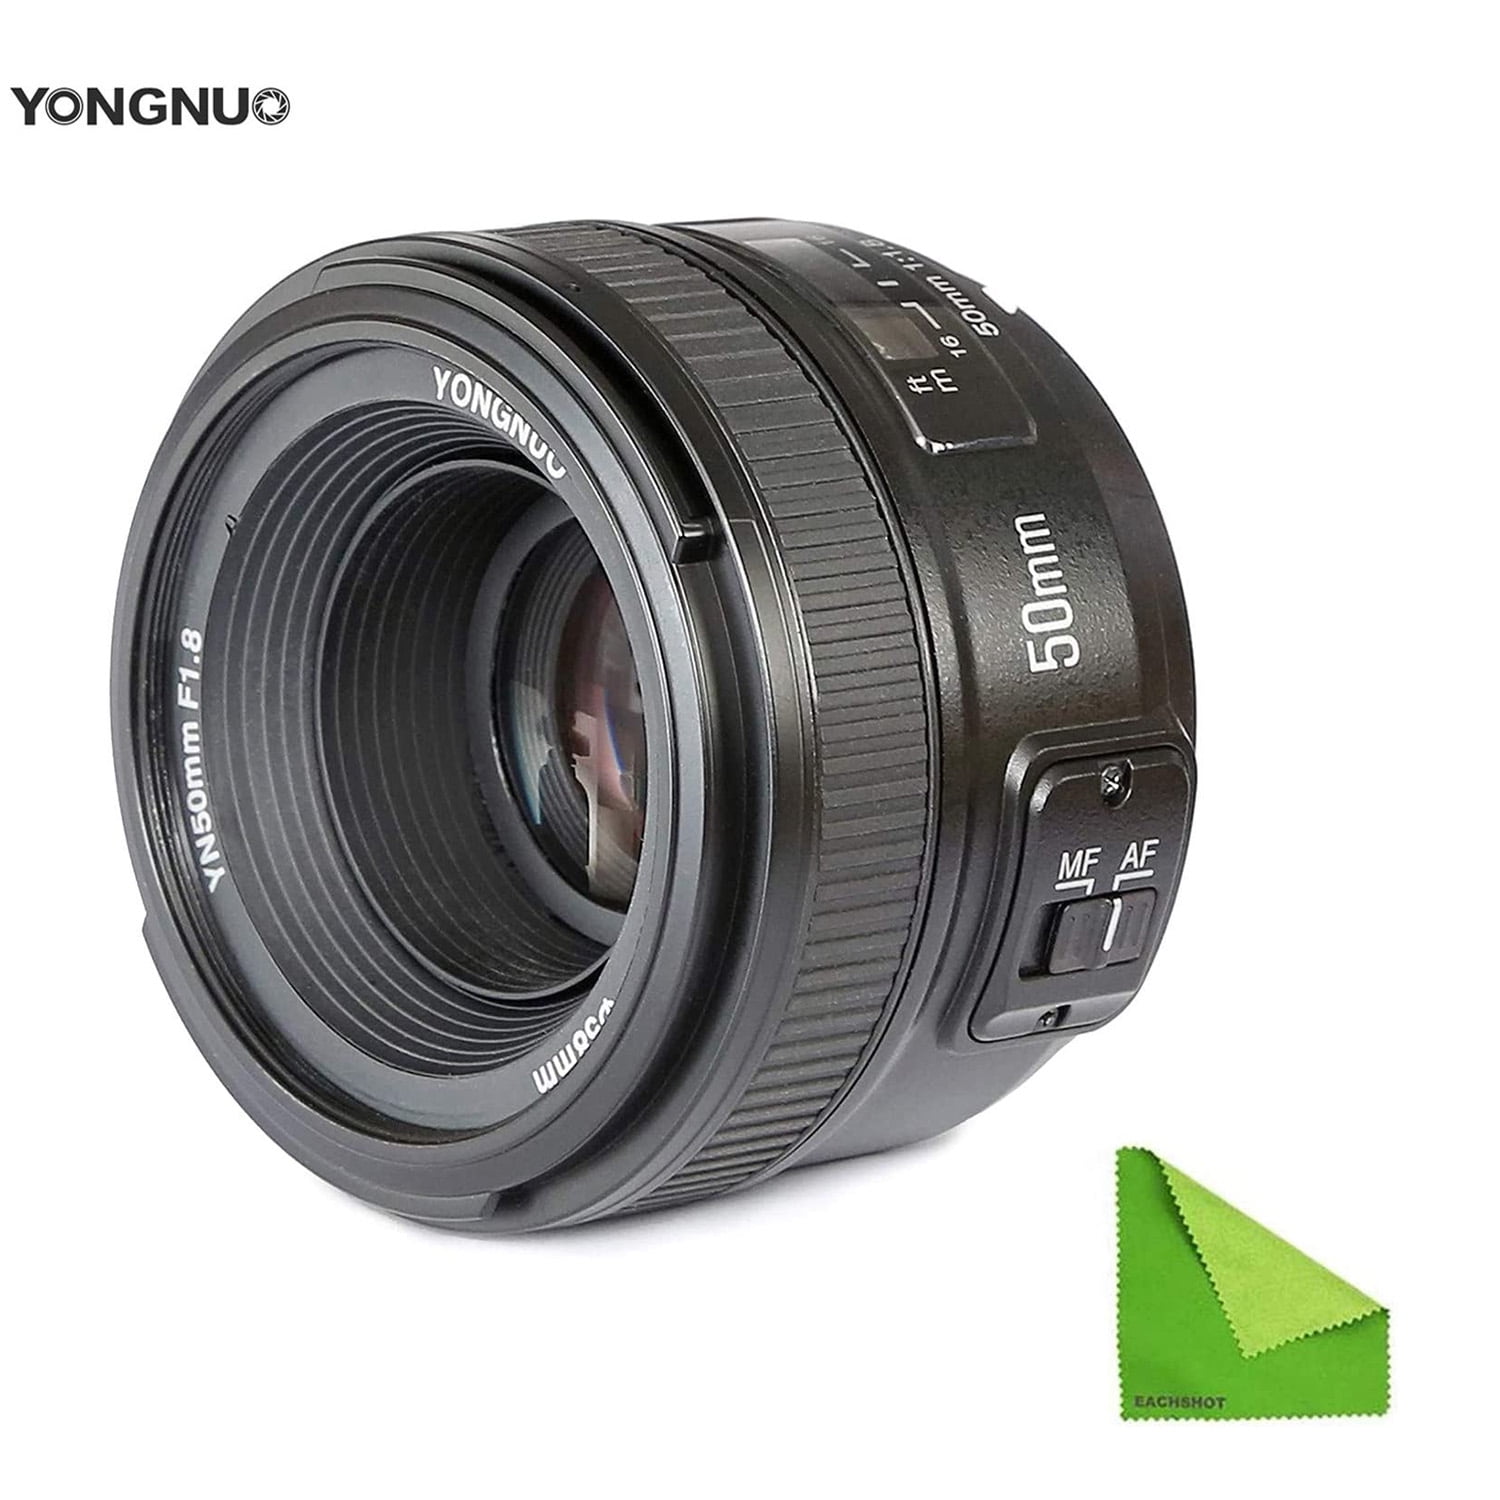 Nikon AF-S Nikkor 50mm f/1.8G Fixed Focal Length Lens - Walmart.com